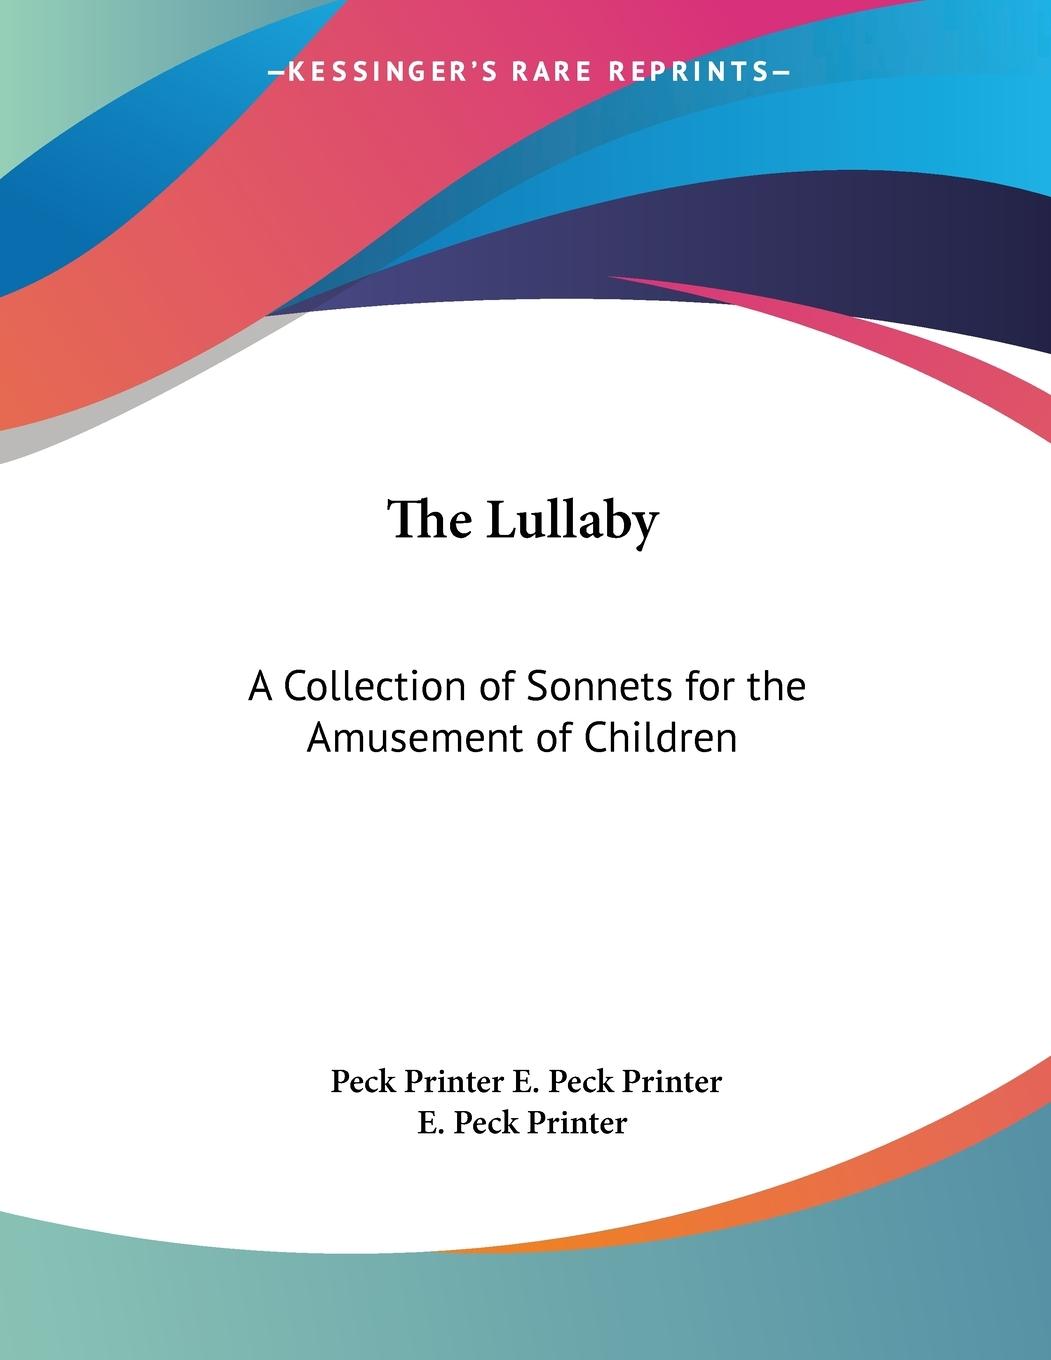 The Lullaby - E. Peck Printer, Peck Printer E. Peck Printer